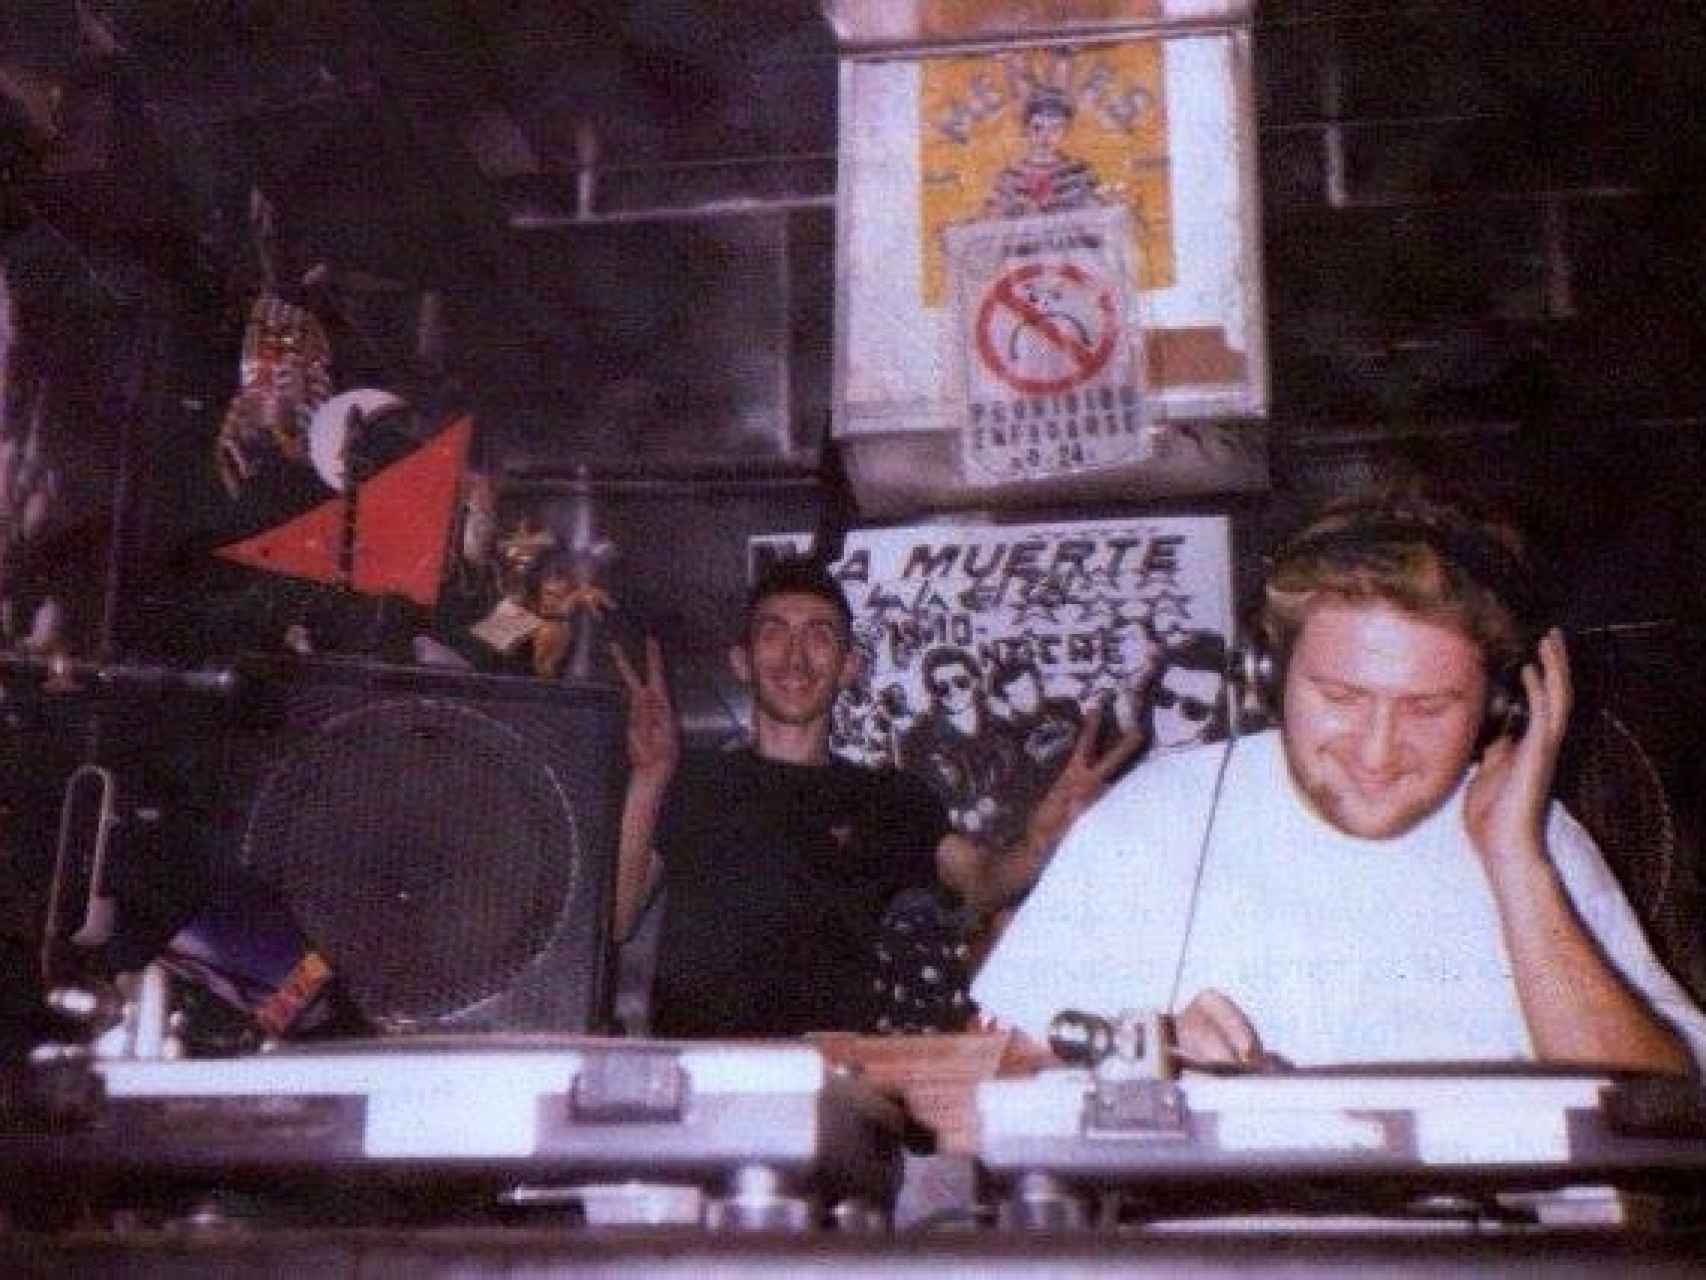 Nando Dixkontrol, en la imagen pinchando delante de Pepebilly, fue un DJ pionero